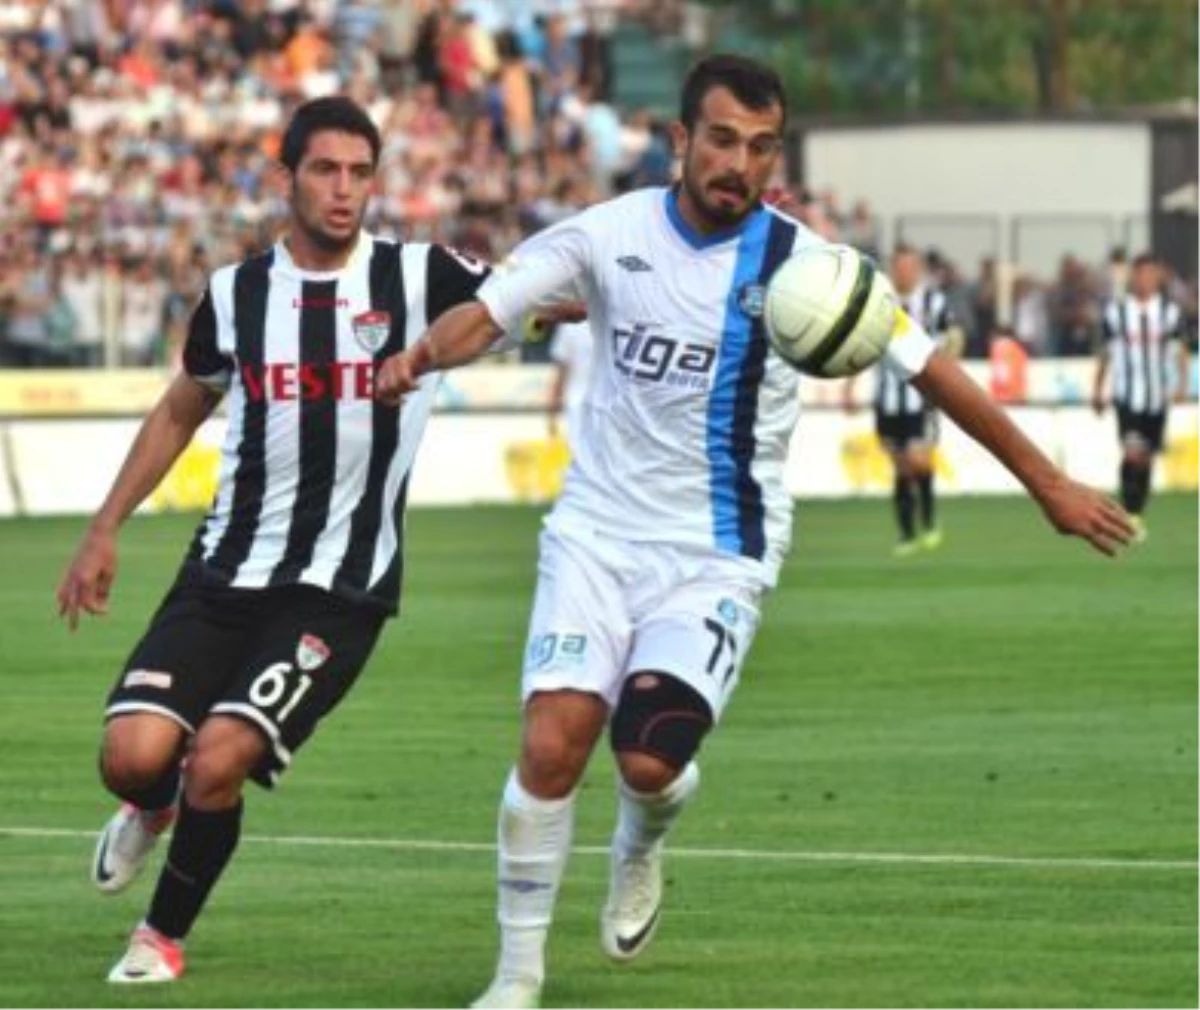 Manisaspor - Adana Demirspor: 1-1